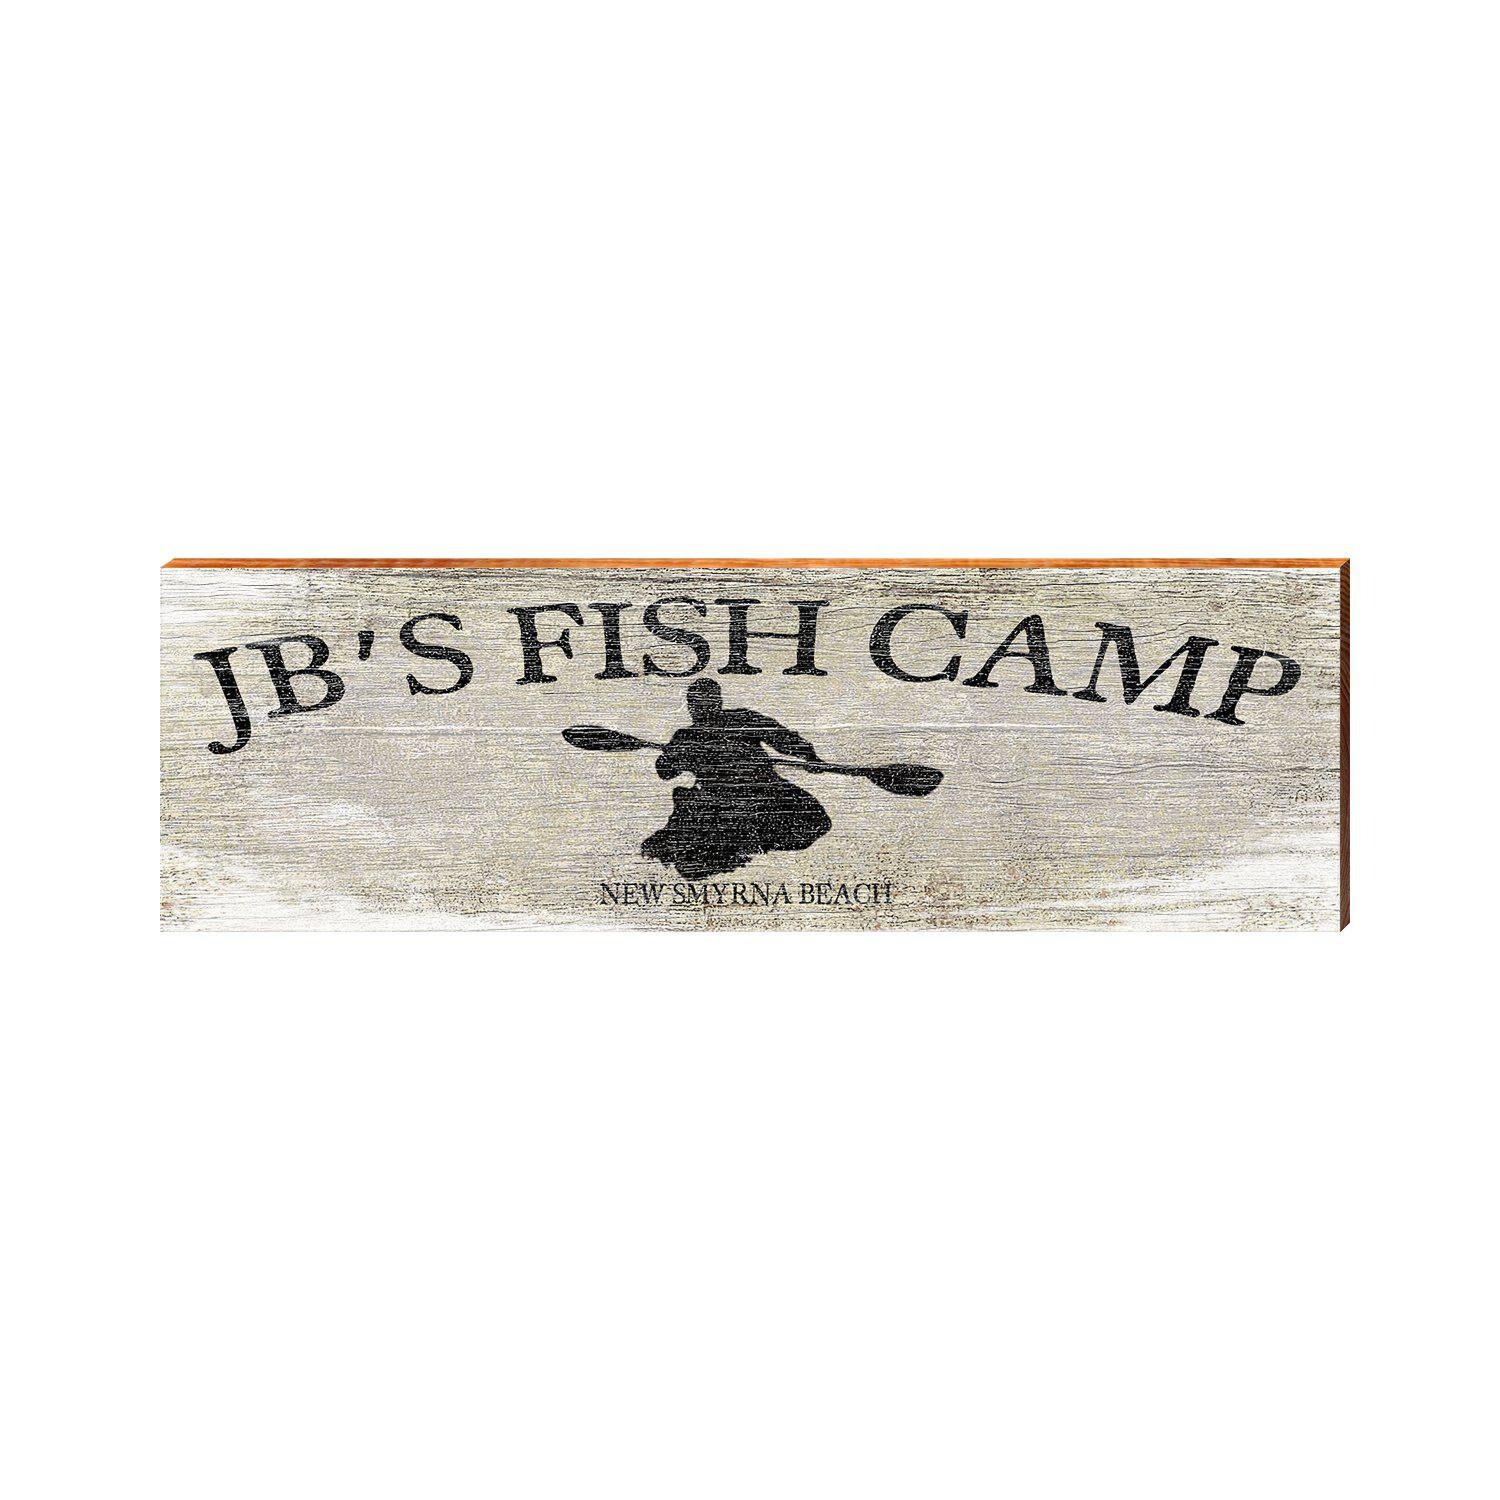 Jb S Fish Camp Row New Smyrna Beach Jbs2 Etsy